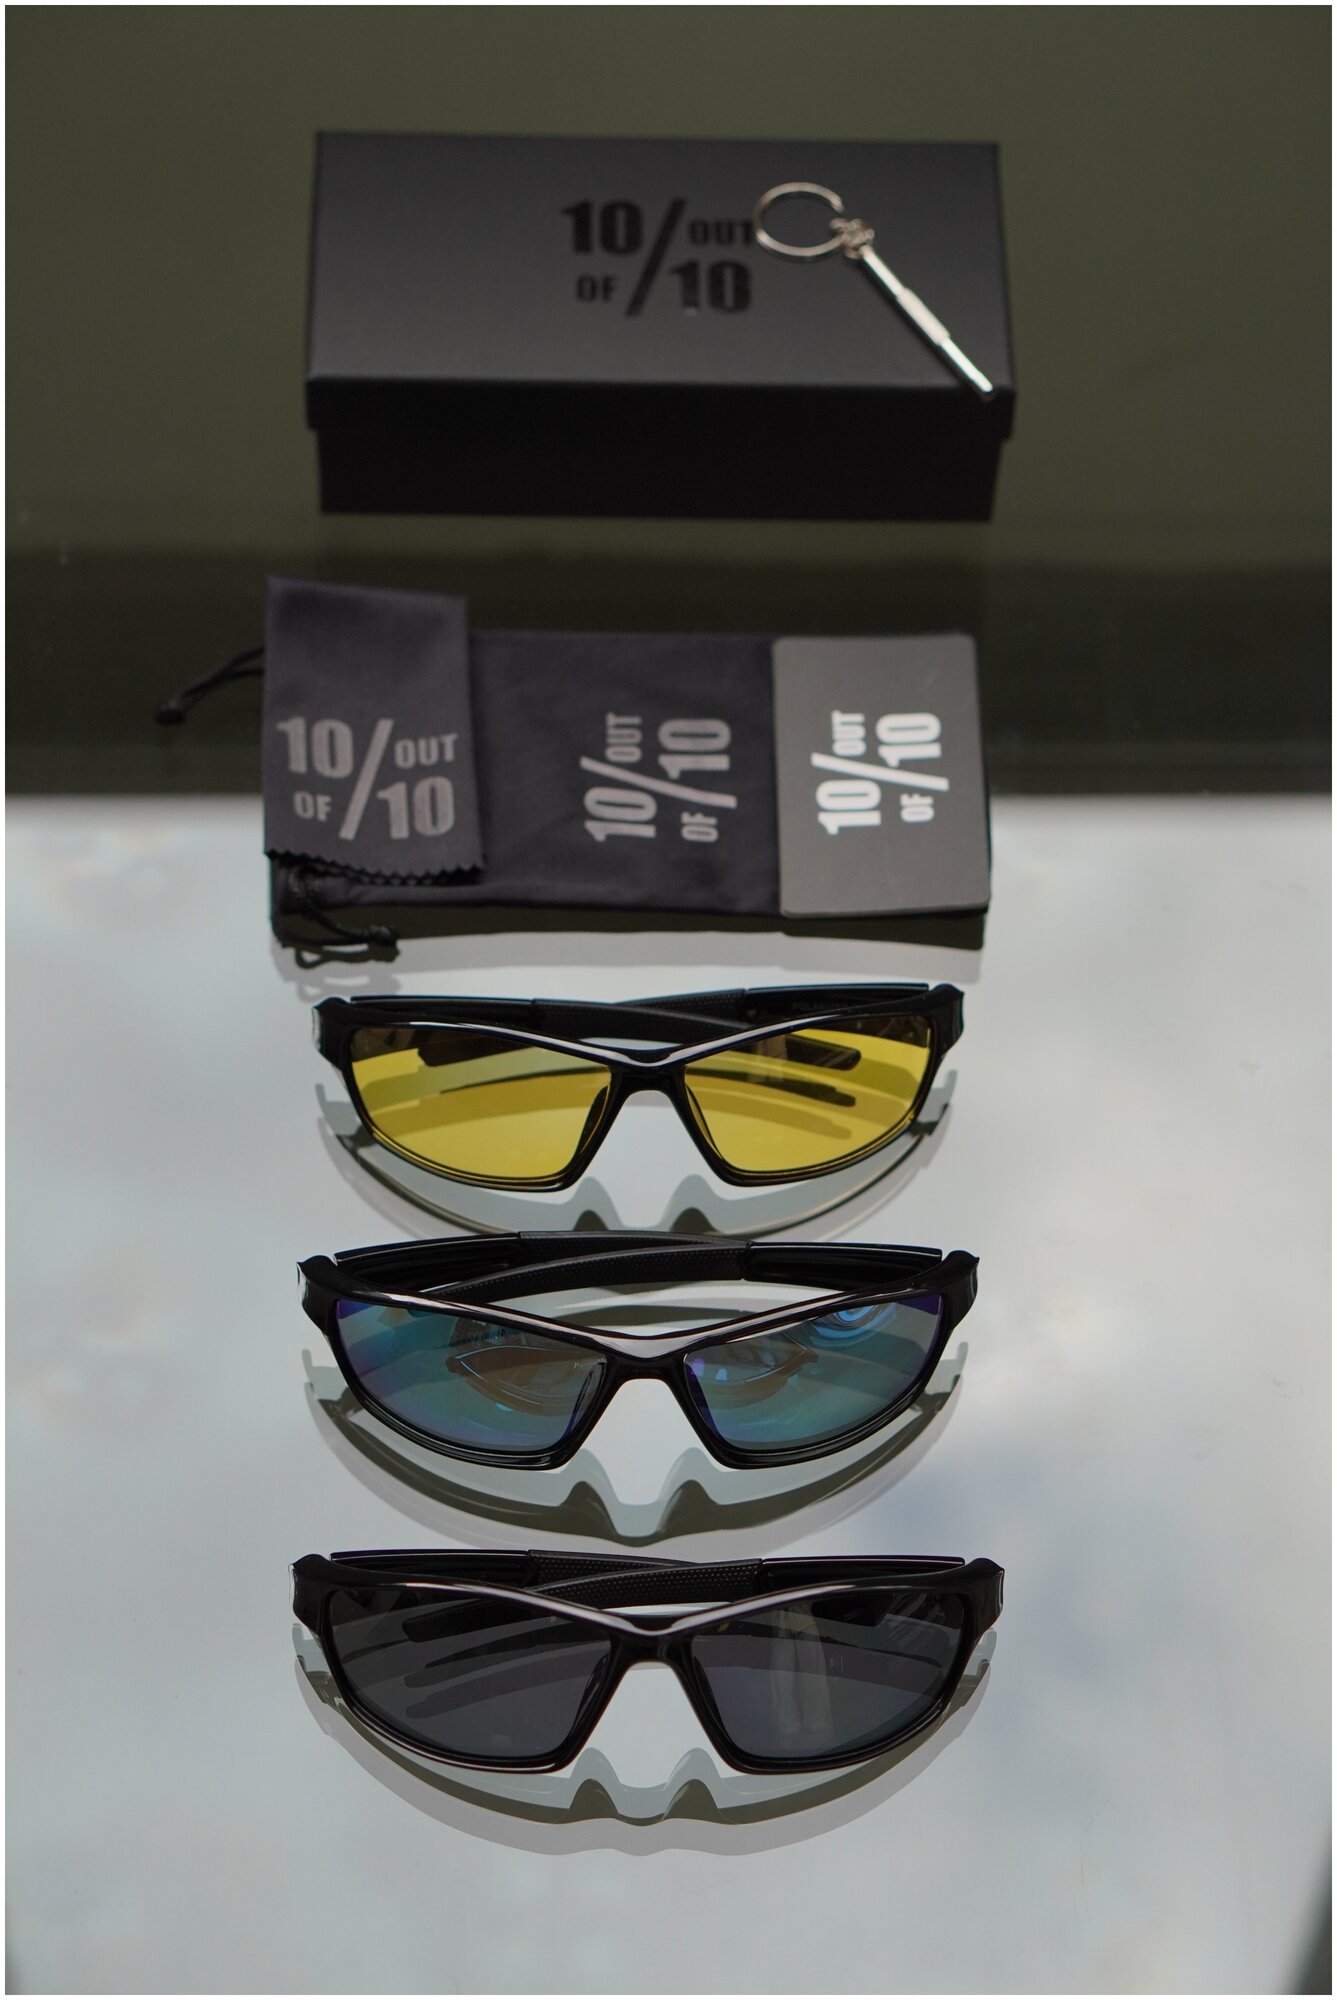 Солнцезащитные очки 10 out of 10, прямоугольные, спортивные,поляризационные, с защитой от УФ, черный — купить в интернет-магазине понизкой цене на Яндекс Маркете